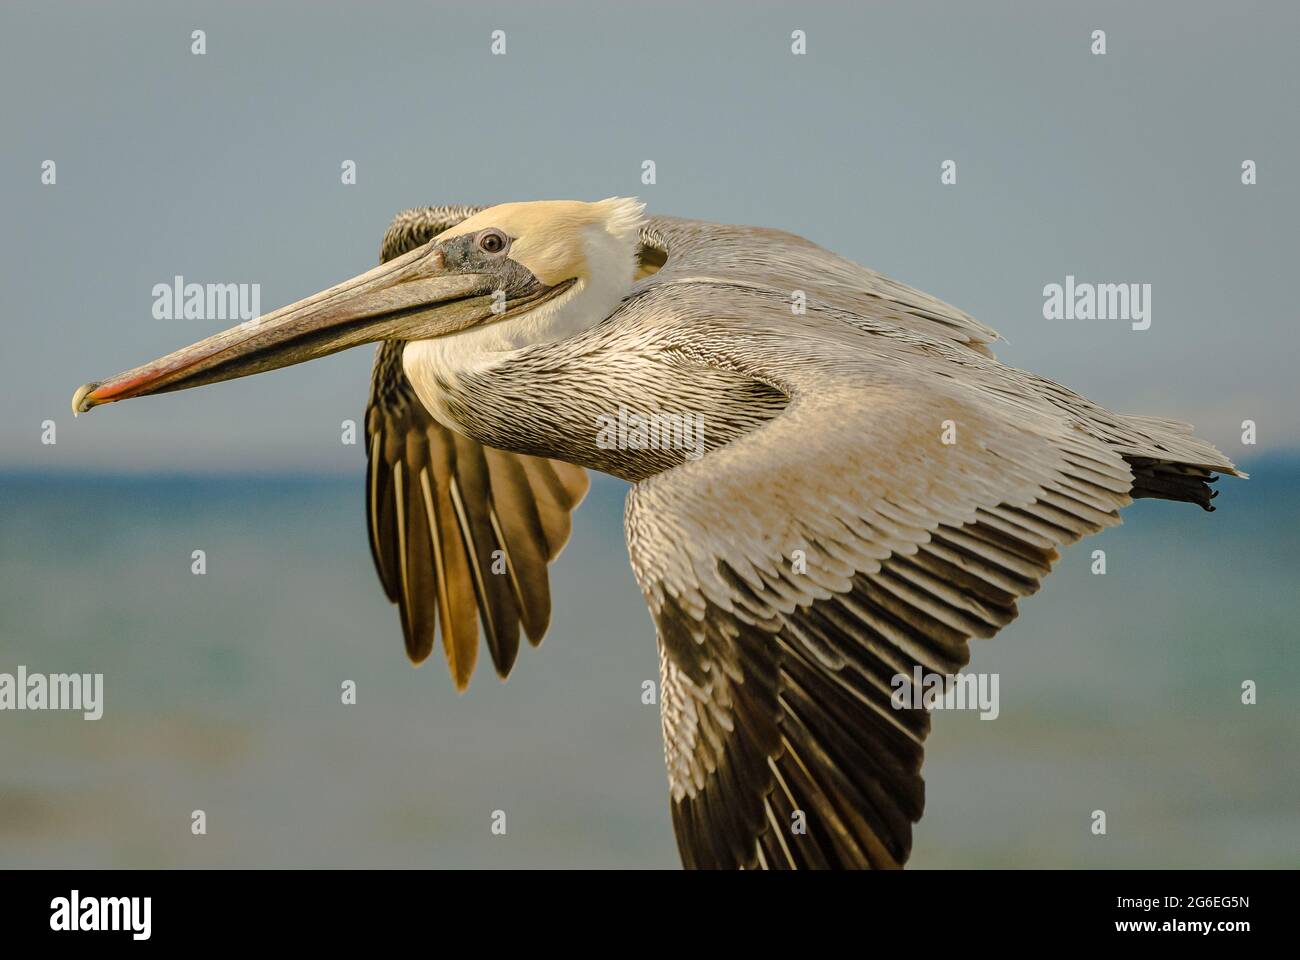 Pelicano marrón (Pelecanus occidentalis) en vuelo Foto de stock